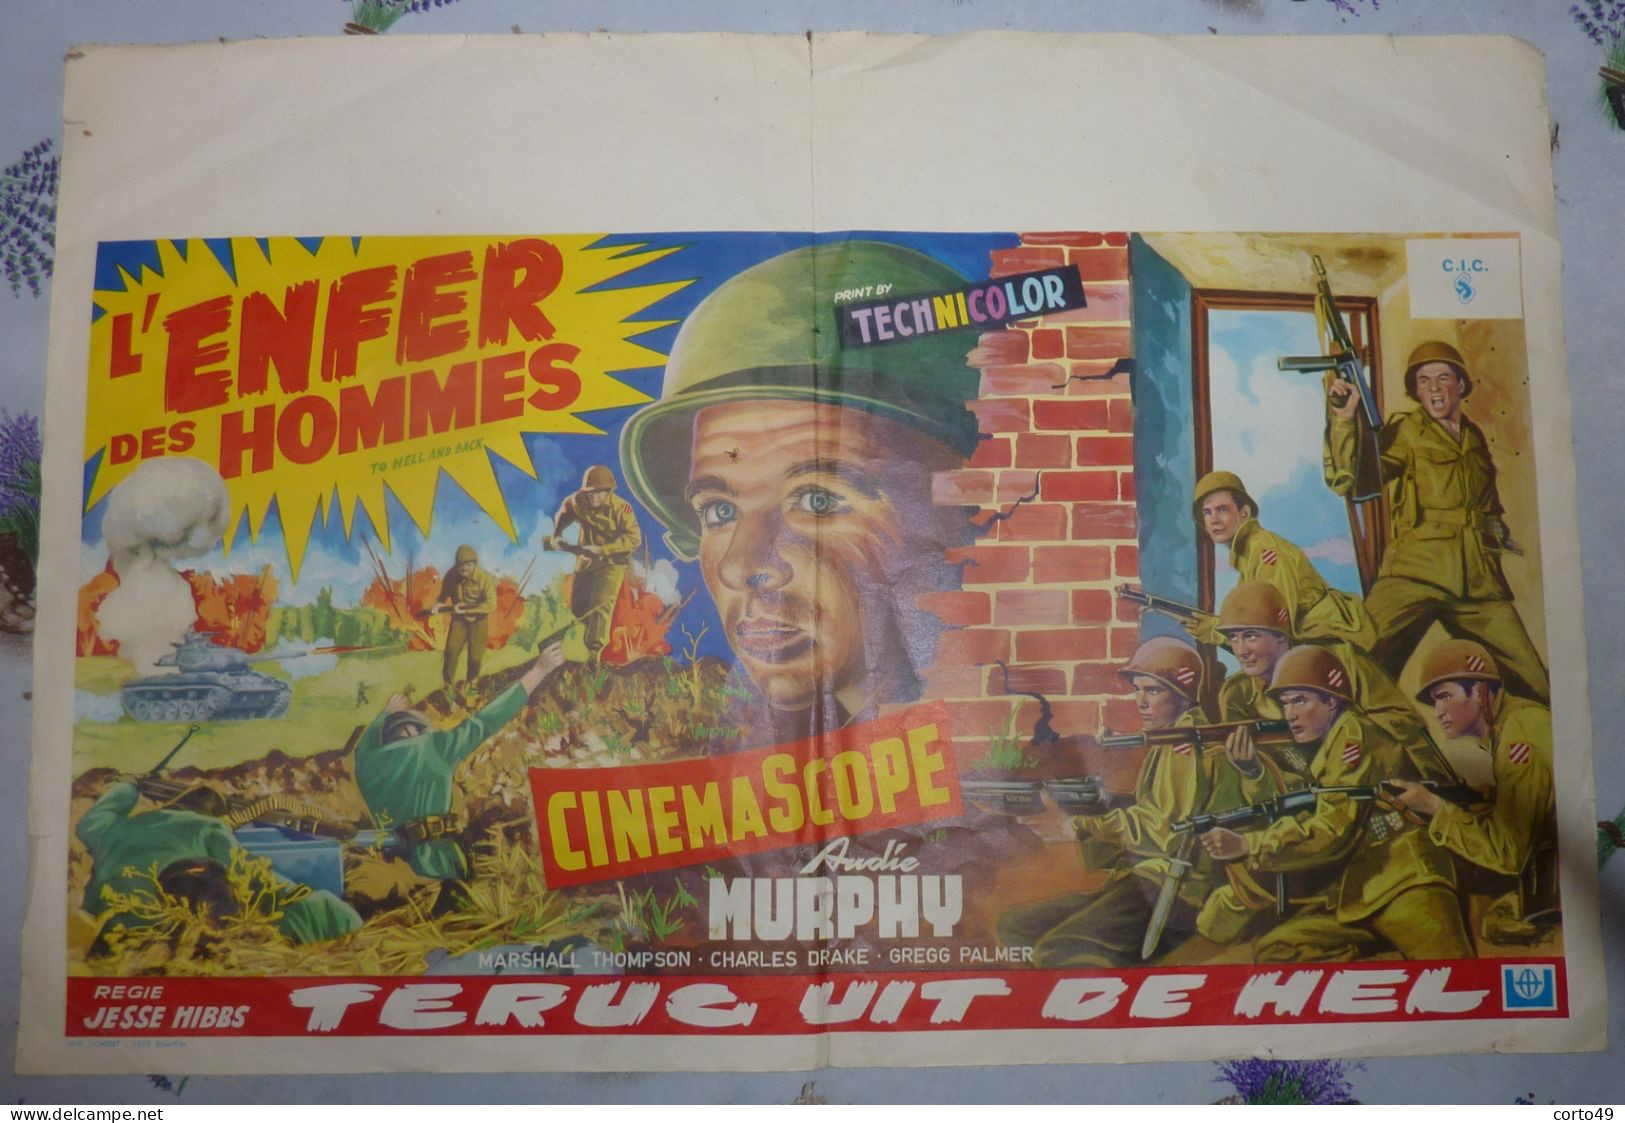 AFFICHE De CINEMA " L' ENFER DES HOMMES "- ANDIE MURPHY - " TERUG UIT DE HEL " - Voir Les 4 Scans ! - Posters